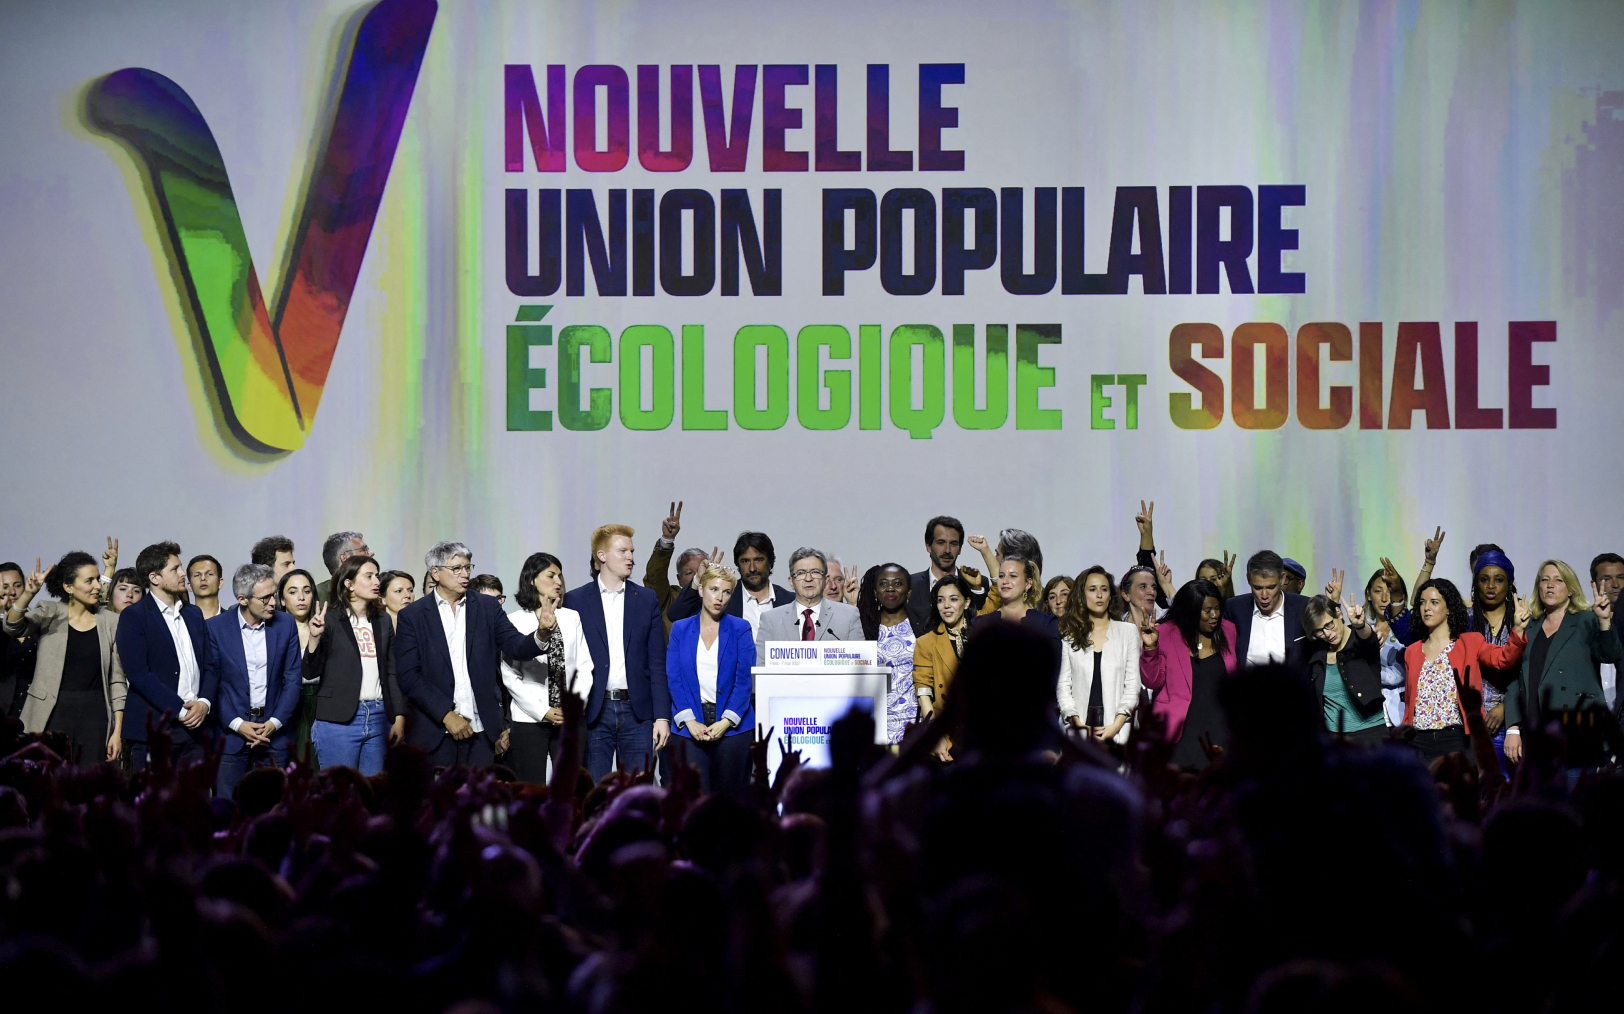 Jean-Luc Mélenchon prononce un discours le 7 mai 2022 à Aubervilliers (Seine-Saint-Denis), lors de la Convention de la Nouvelle union populaire économique et sociale (Nupes) qui regroupe plusieurs partis de gauche. AFP/Julien De Rosa